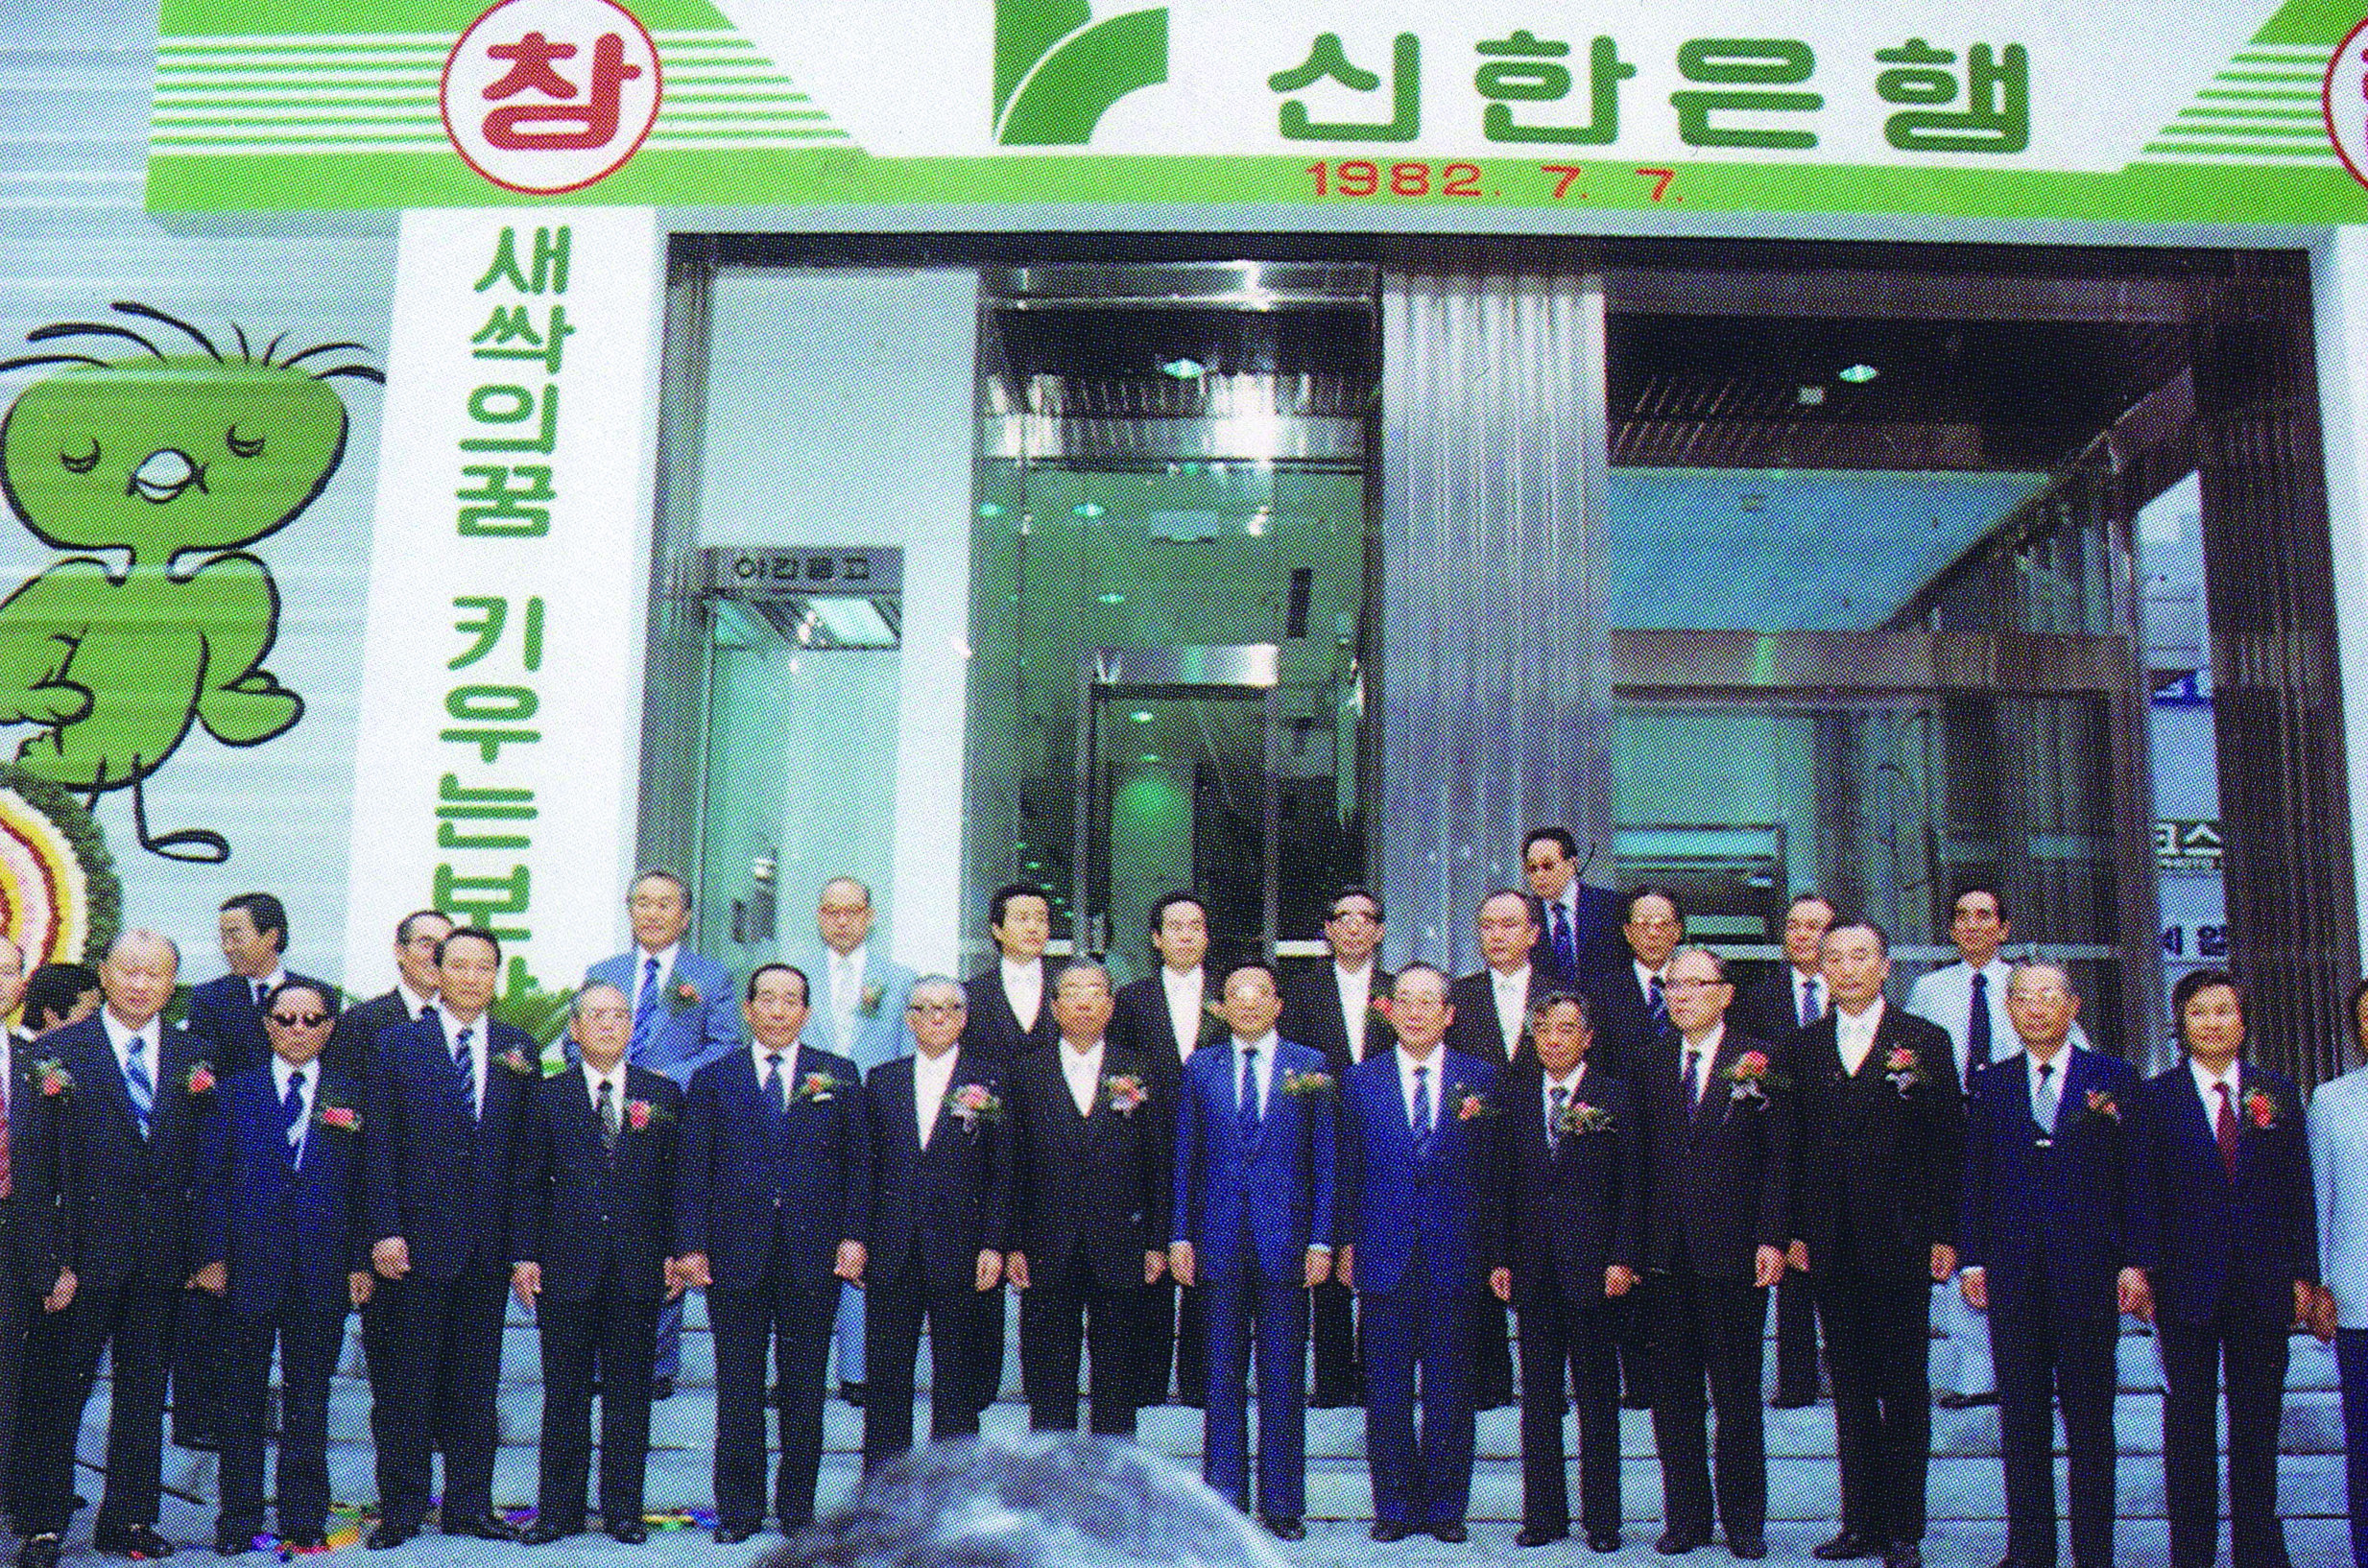 1982년 7월 7일 신한은행 창립기념식. 서울 명동 코스모스백화점 앞이다. 사진 나남